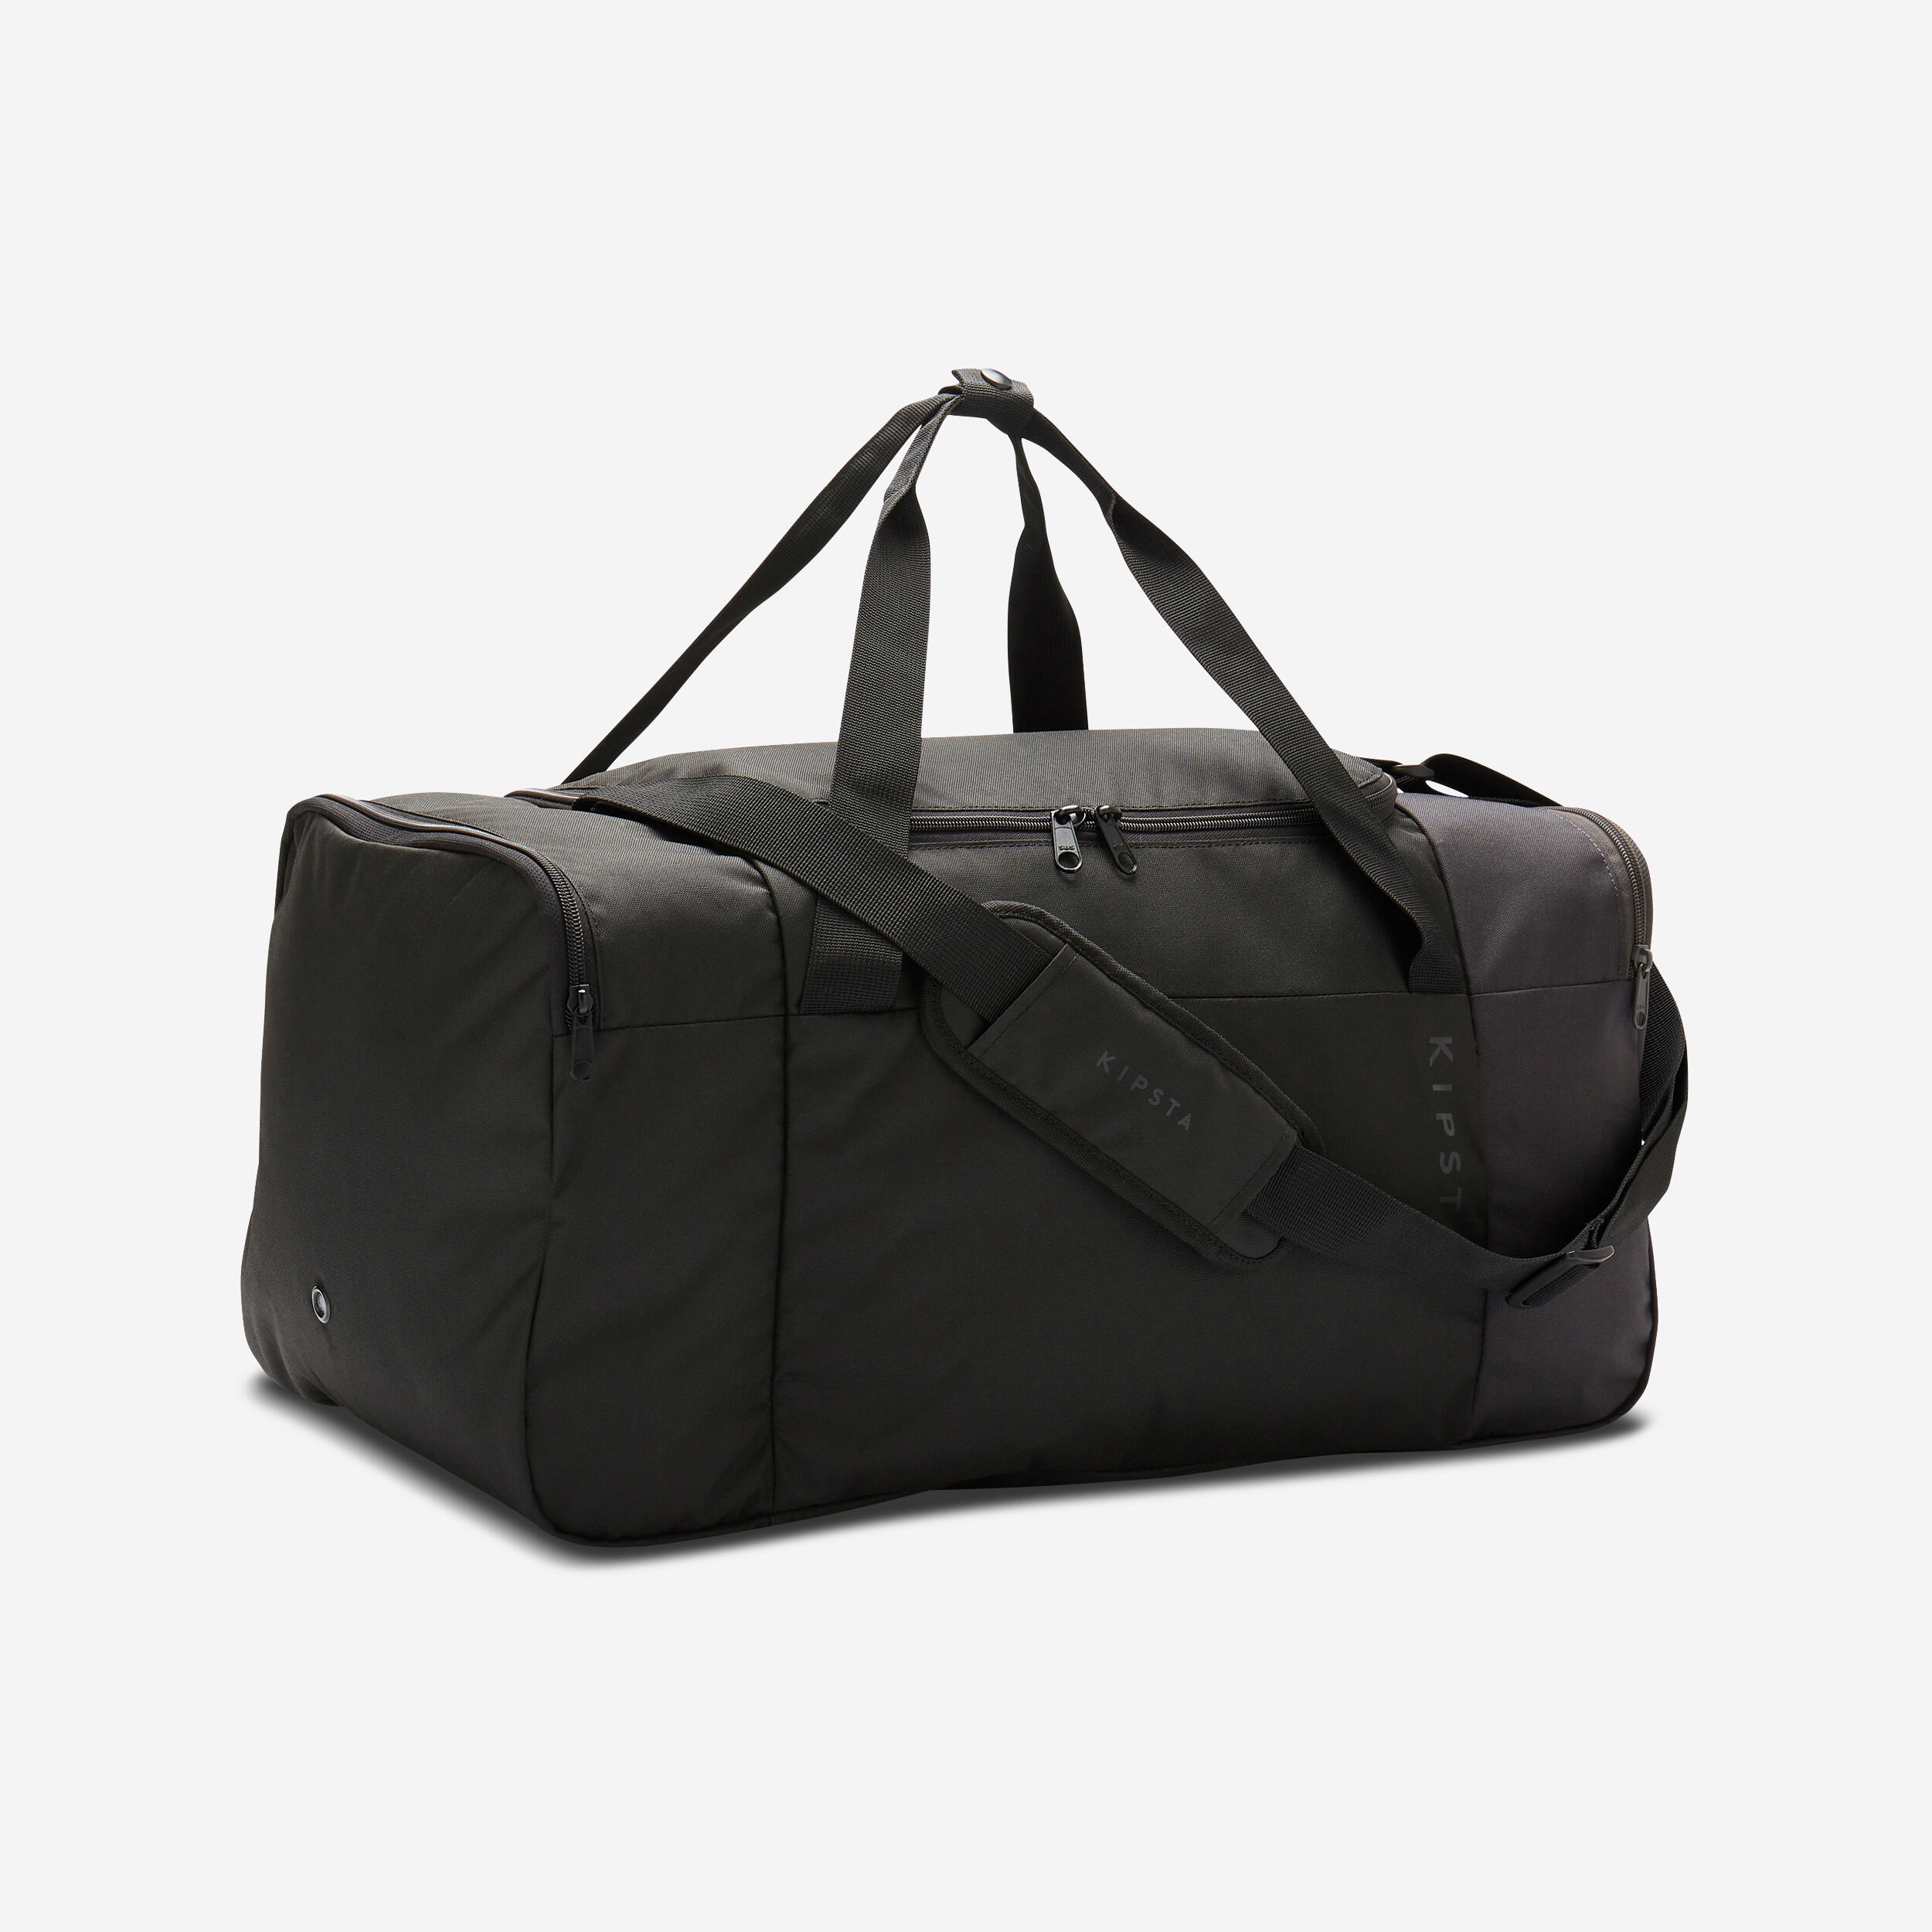 Essential Sports Bag 55 L - KIPSTA